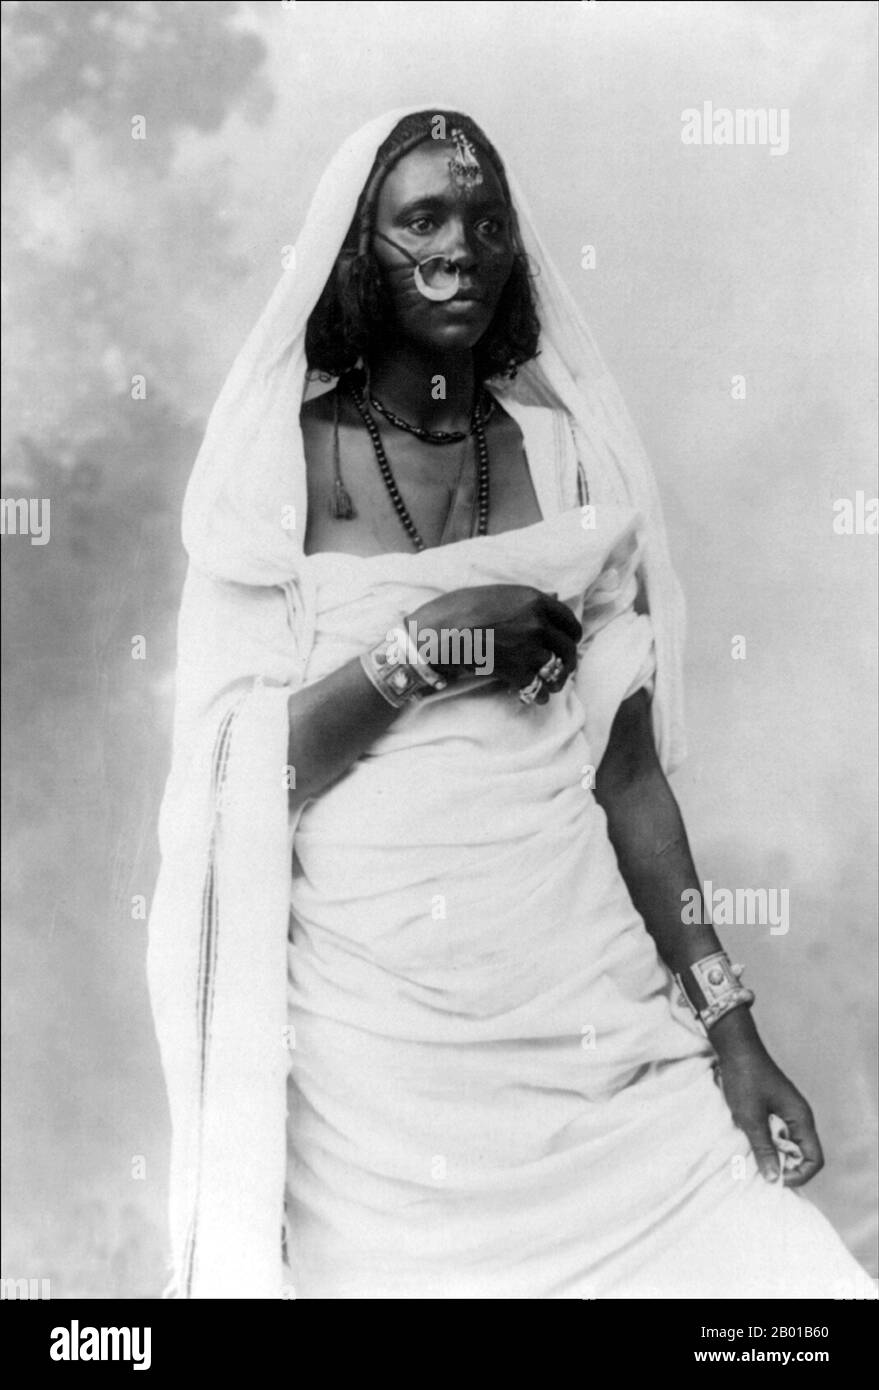 Sudán: Mujer nubia. Foto de Jean Pascal Sebah (1872 - 6 de junio de 1947), c. 1890-1923. Nubia es una región a lo largo del Nilo, en el norte de Sudán y el sur de Egipto. Hubo un número de pequeños reinos nubios a lo largo de la Edad Media, el último de los cuales colapsó en 1504, cuando Nubia se dividió entre Egipto y el sultanato de Sennar, resultando en la arabización de gran parte de la población nubia. Nubia se unió de nuevo dentro del Egipto otomano en el siglo 19th, y dentro del Sudán anglo-egipcio de 1899 a 1956. El nombre Nubia se deriva del pueblo Noba. Foto de stock